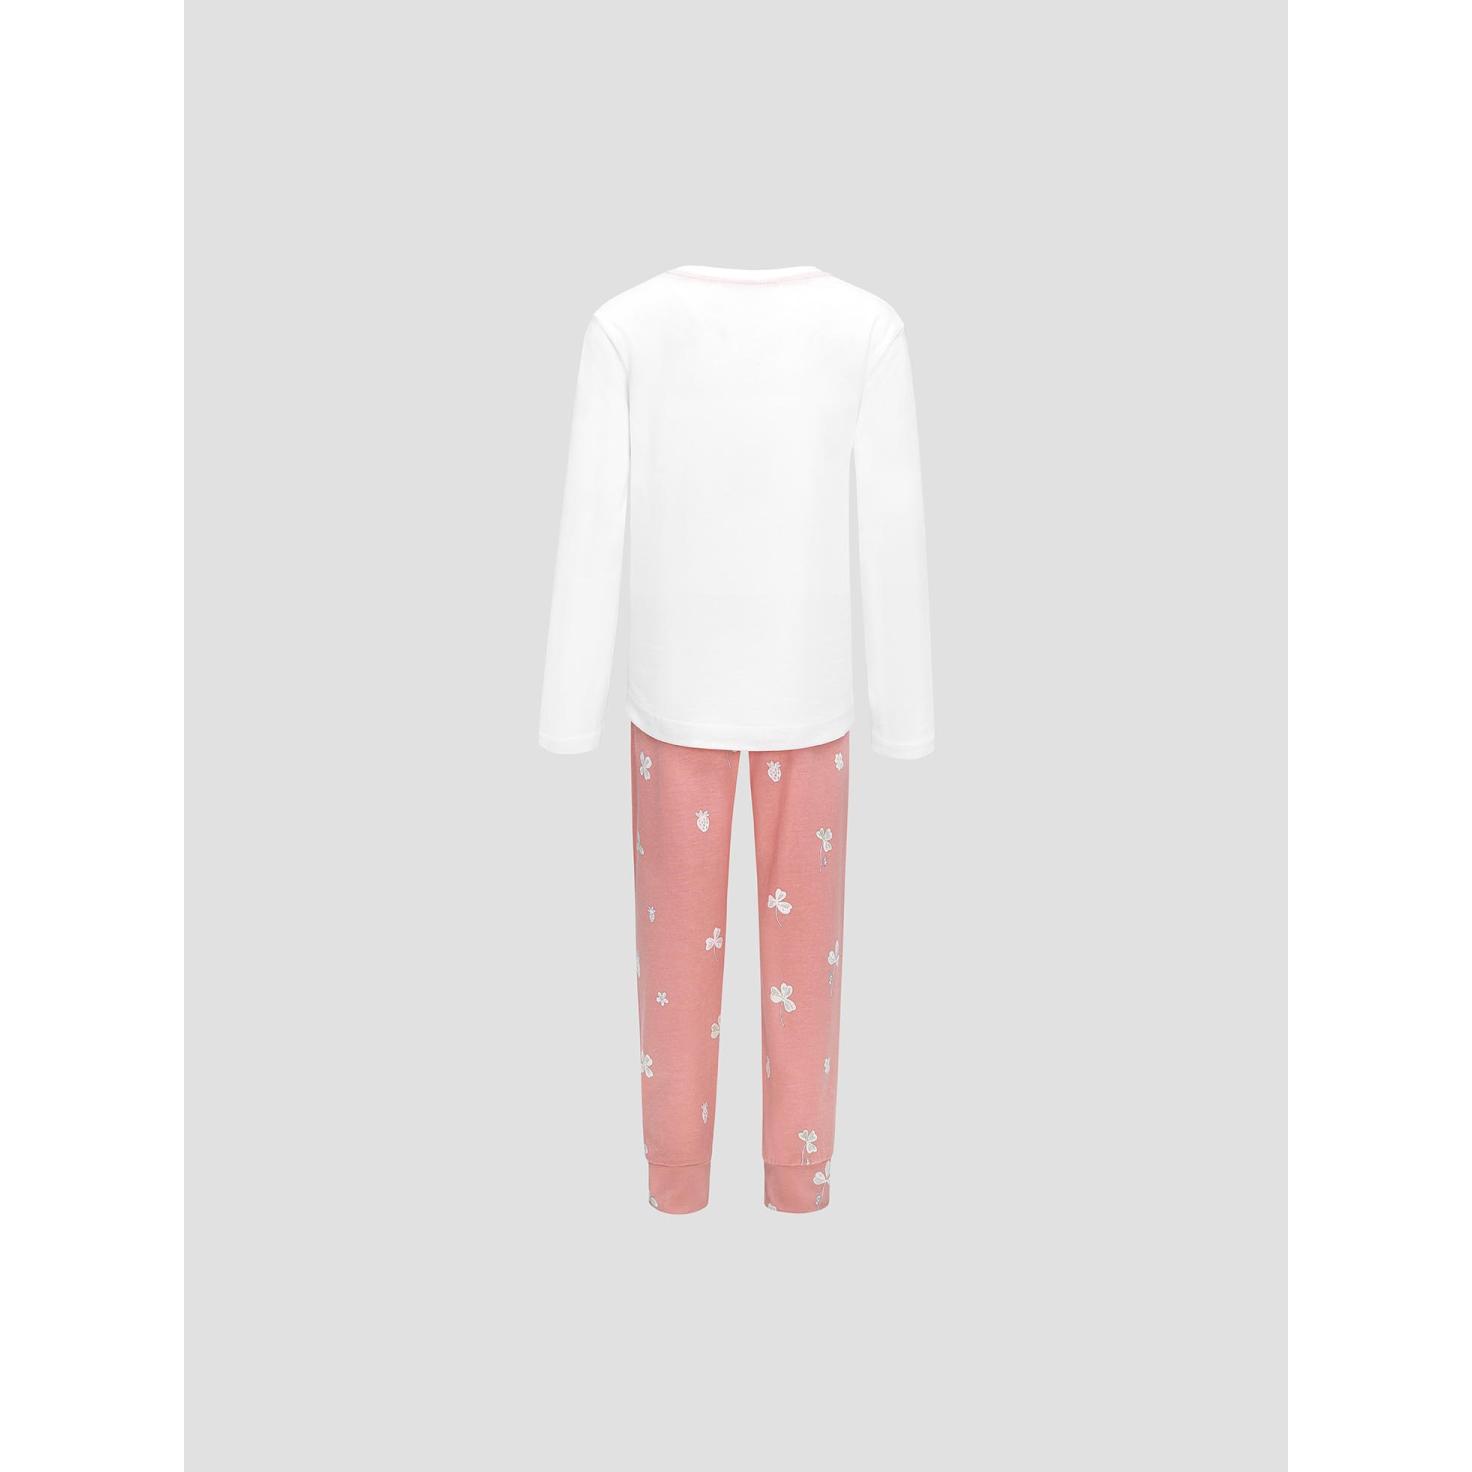 Пижама для девочек Kids by togas Стробби бело-розовый 128-134 см, цвет белый, размер 128-134 см - фото 2